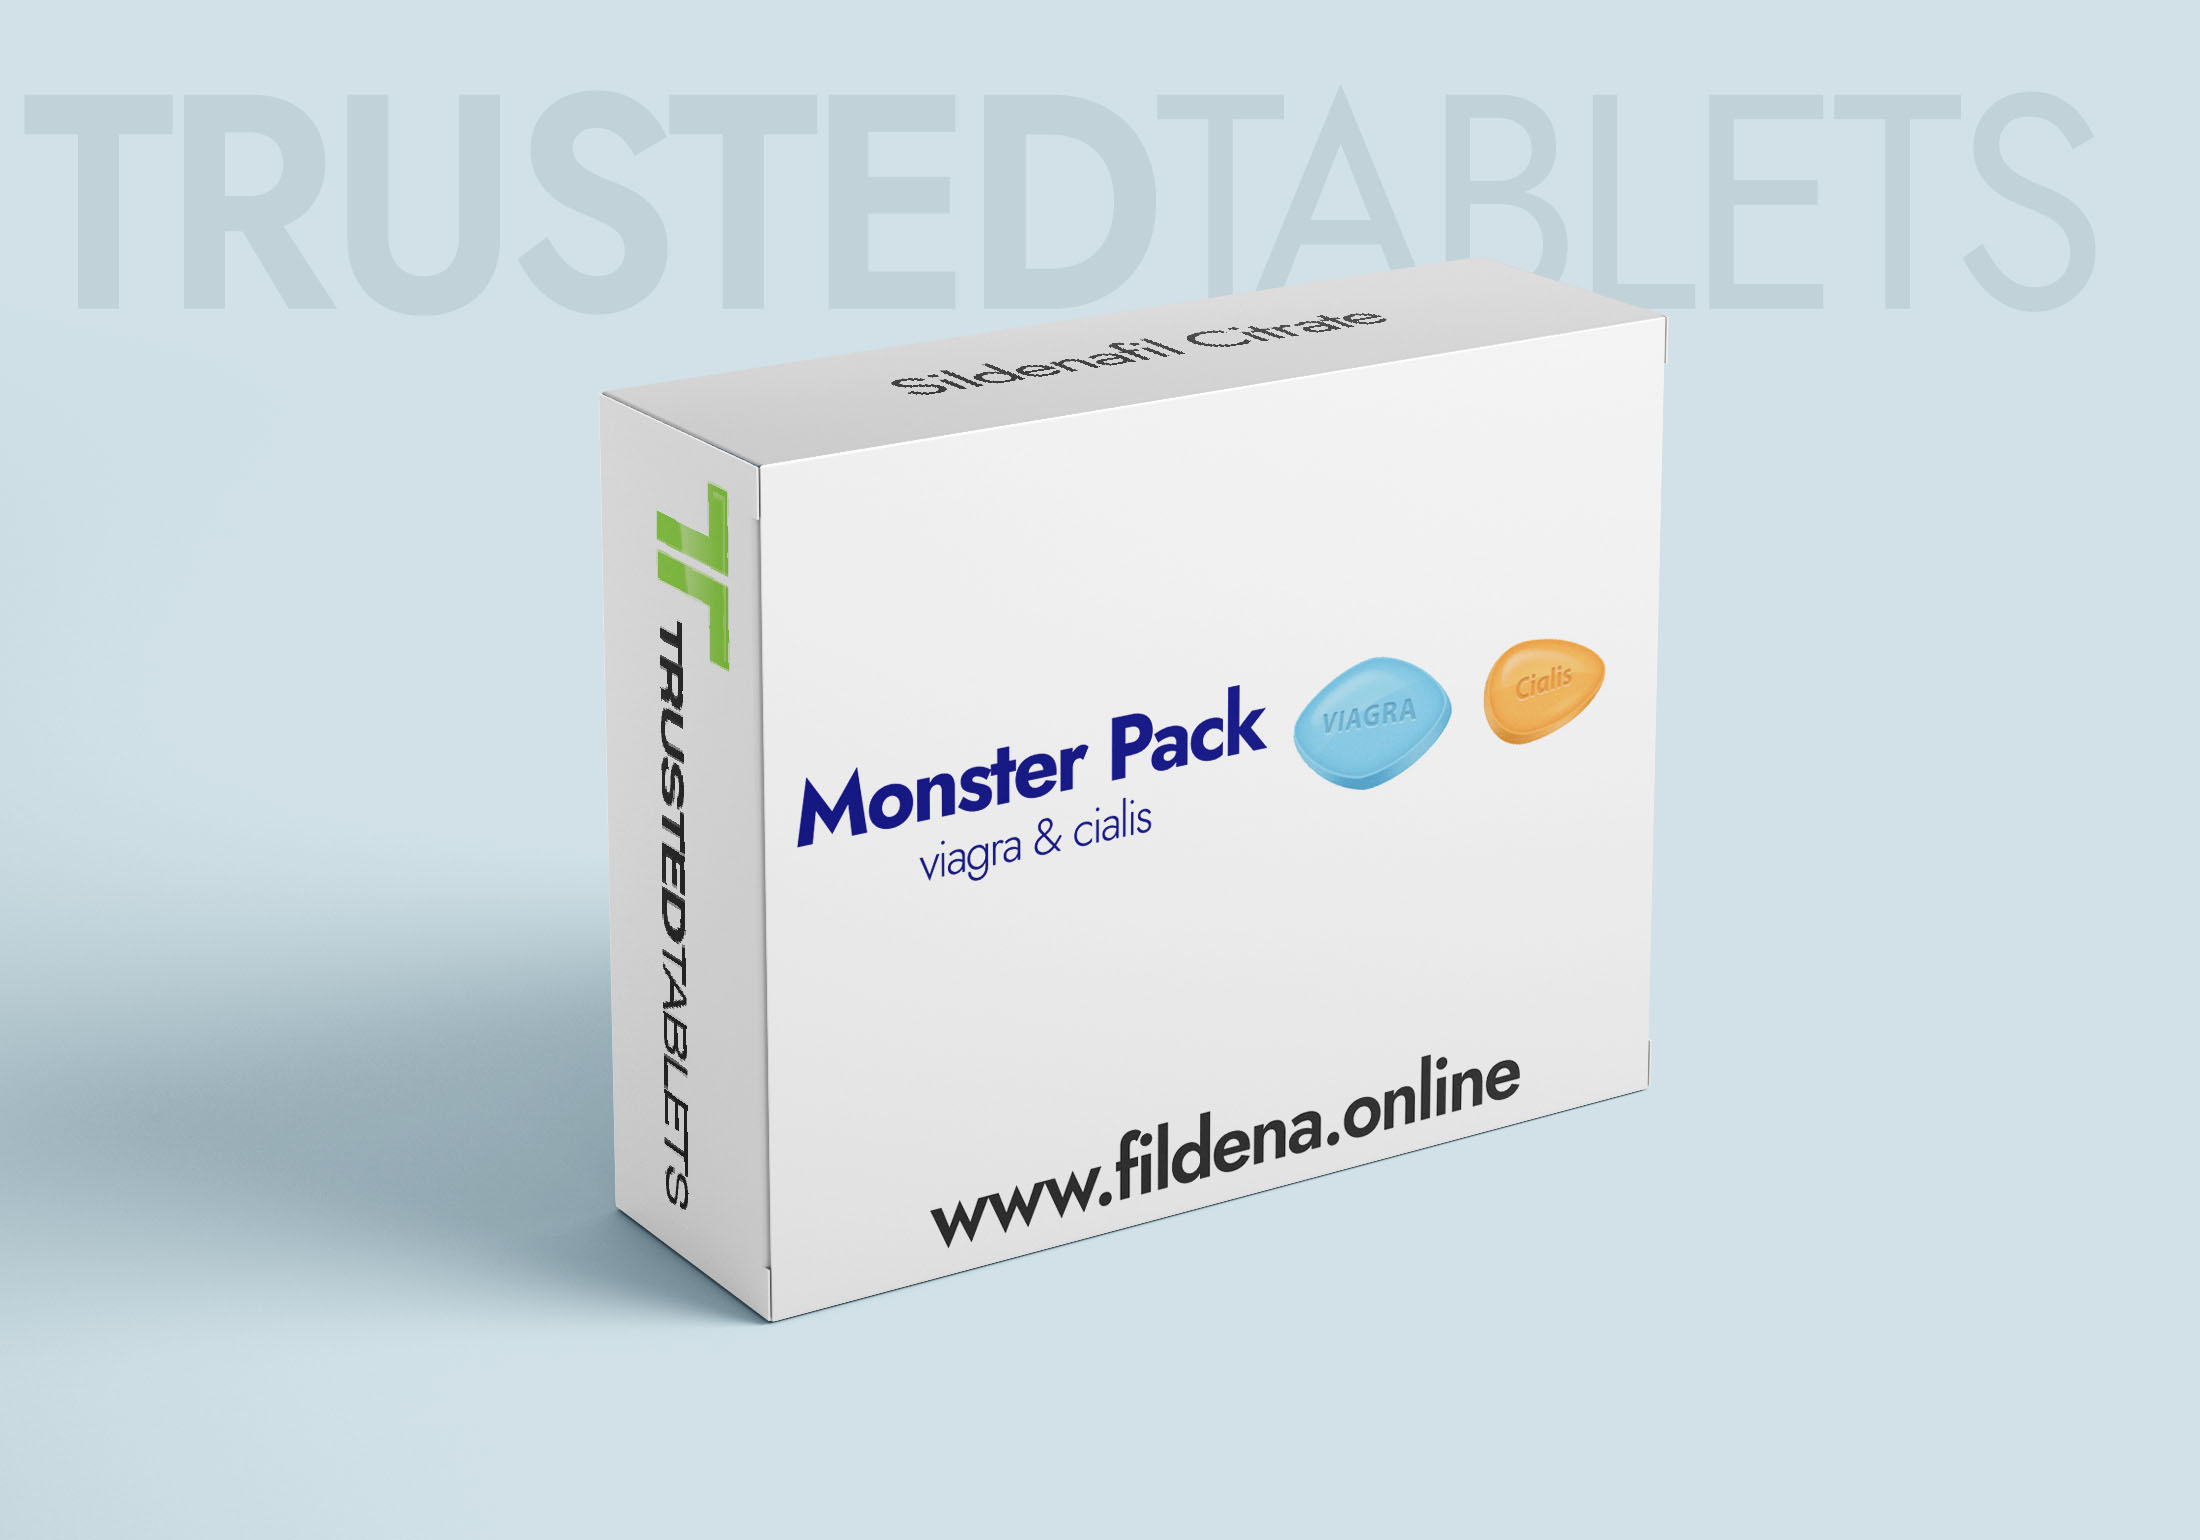 Monster Pack TrustedTablets